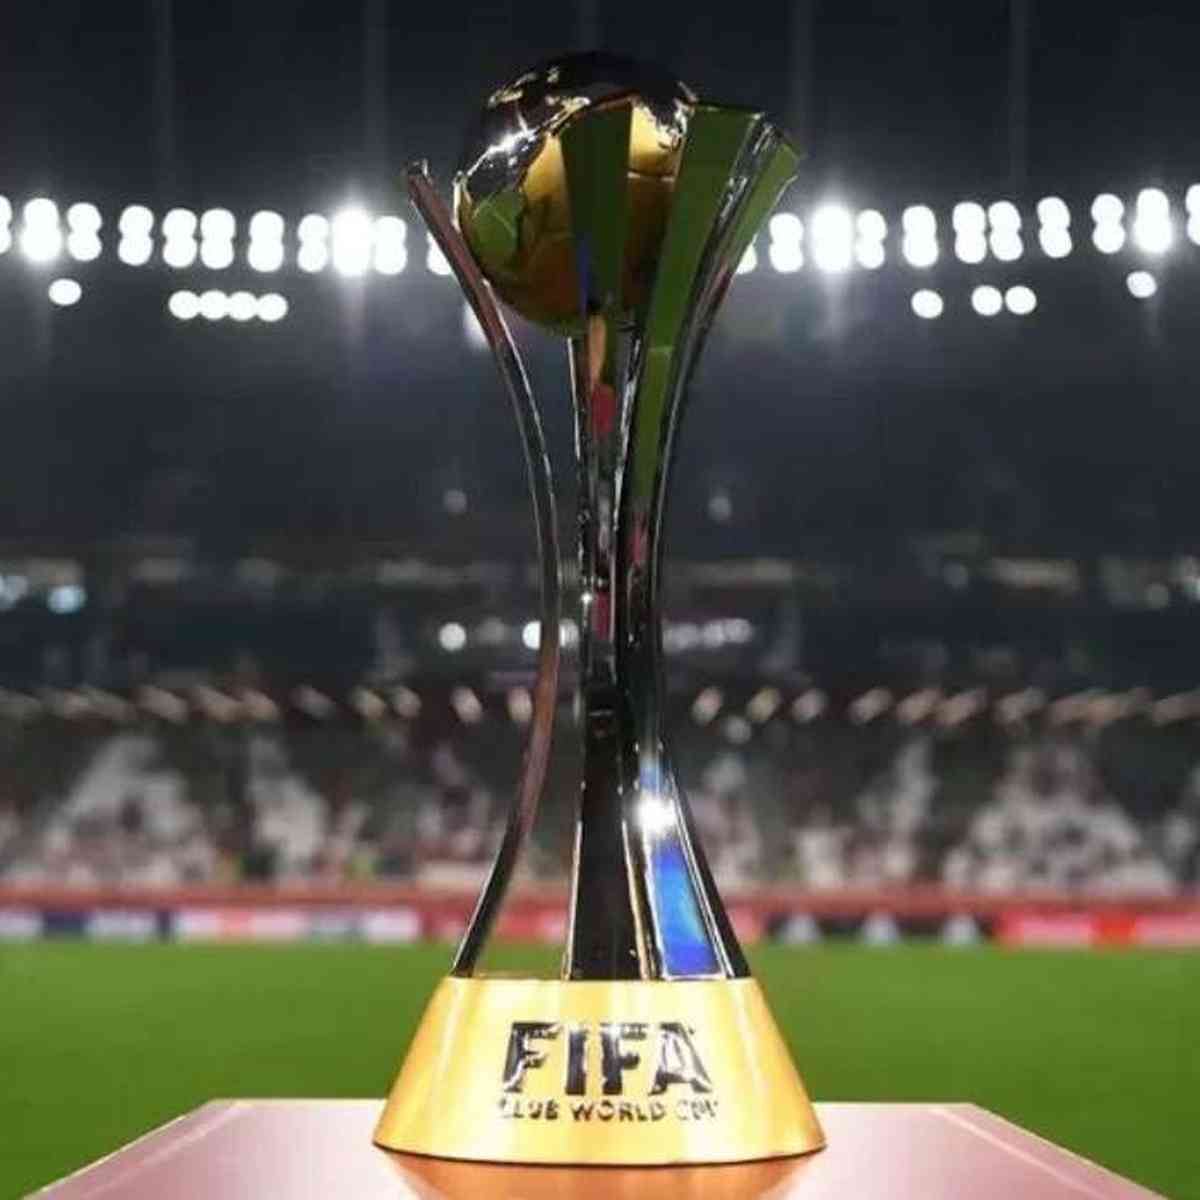 Estados Unidos sediará a primeira Copa do Mundo de Clubes da Fifa em 2025 -  Esportes - Estado de Minas